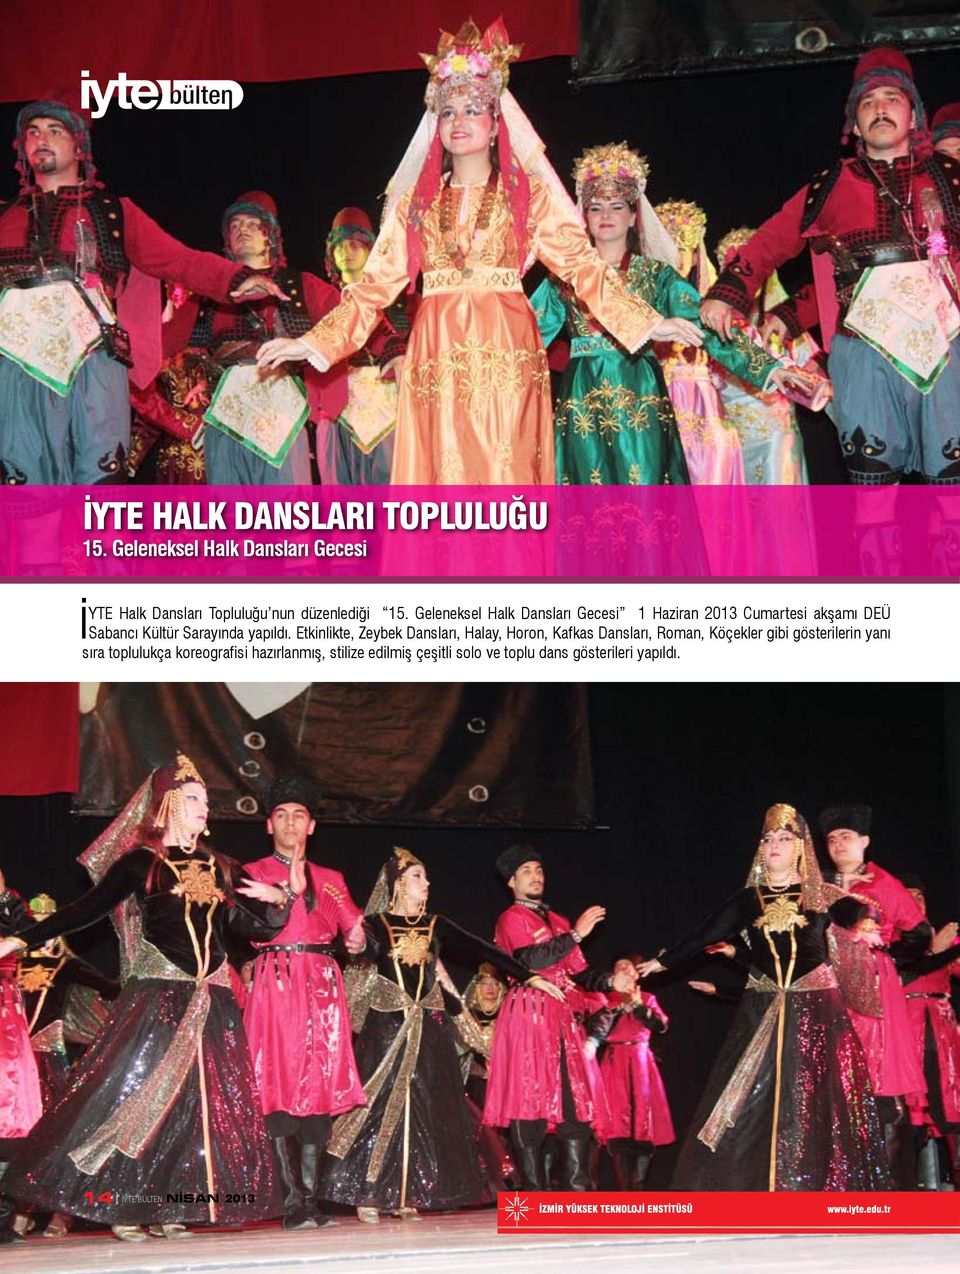 Geleneksel Halk Dansları Gecesi 1 Haziran 2013 Cumartesi akşamı DEÜ Sabancı Kültür Sarayında yapıldı.